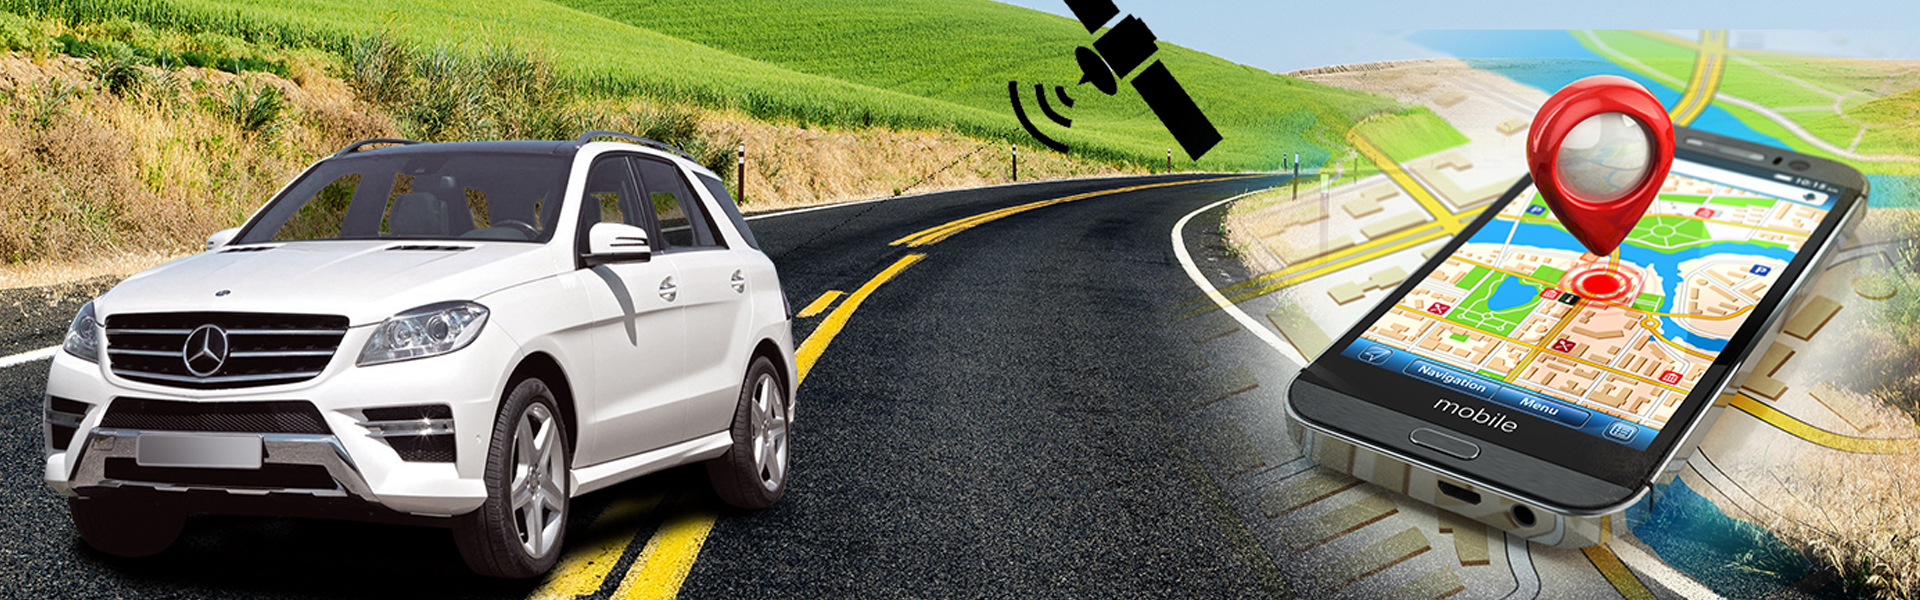 Навигатор нажми. GPS мониторинг автомобиля. GPS для автомобиля. GPS Tracker car. Автомобиль легковой GPS мониторинг.